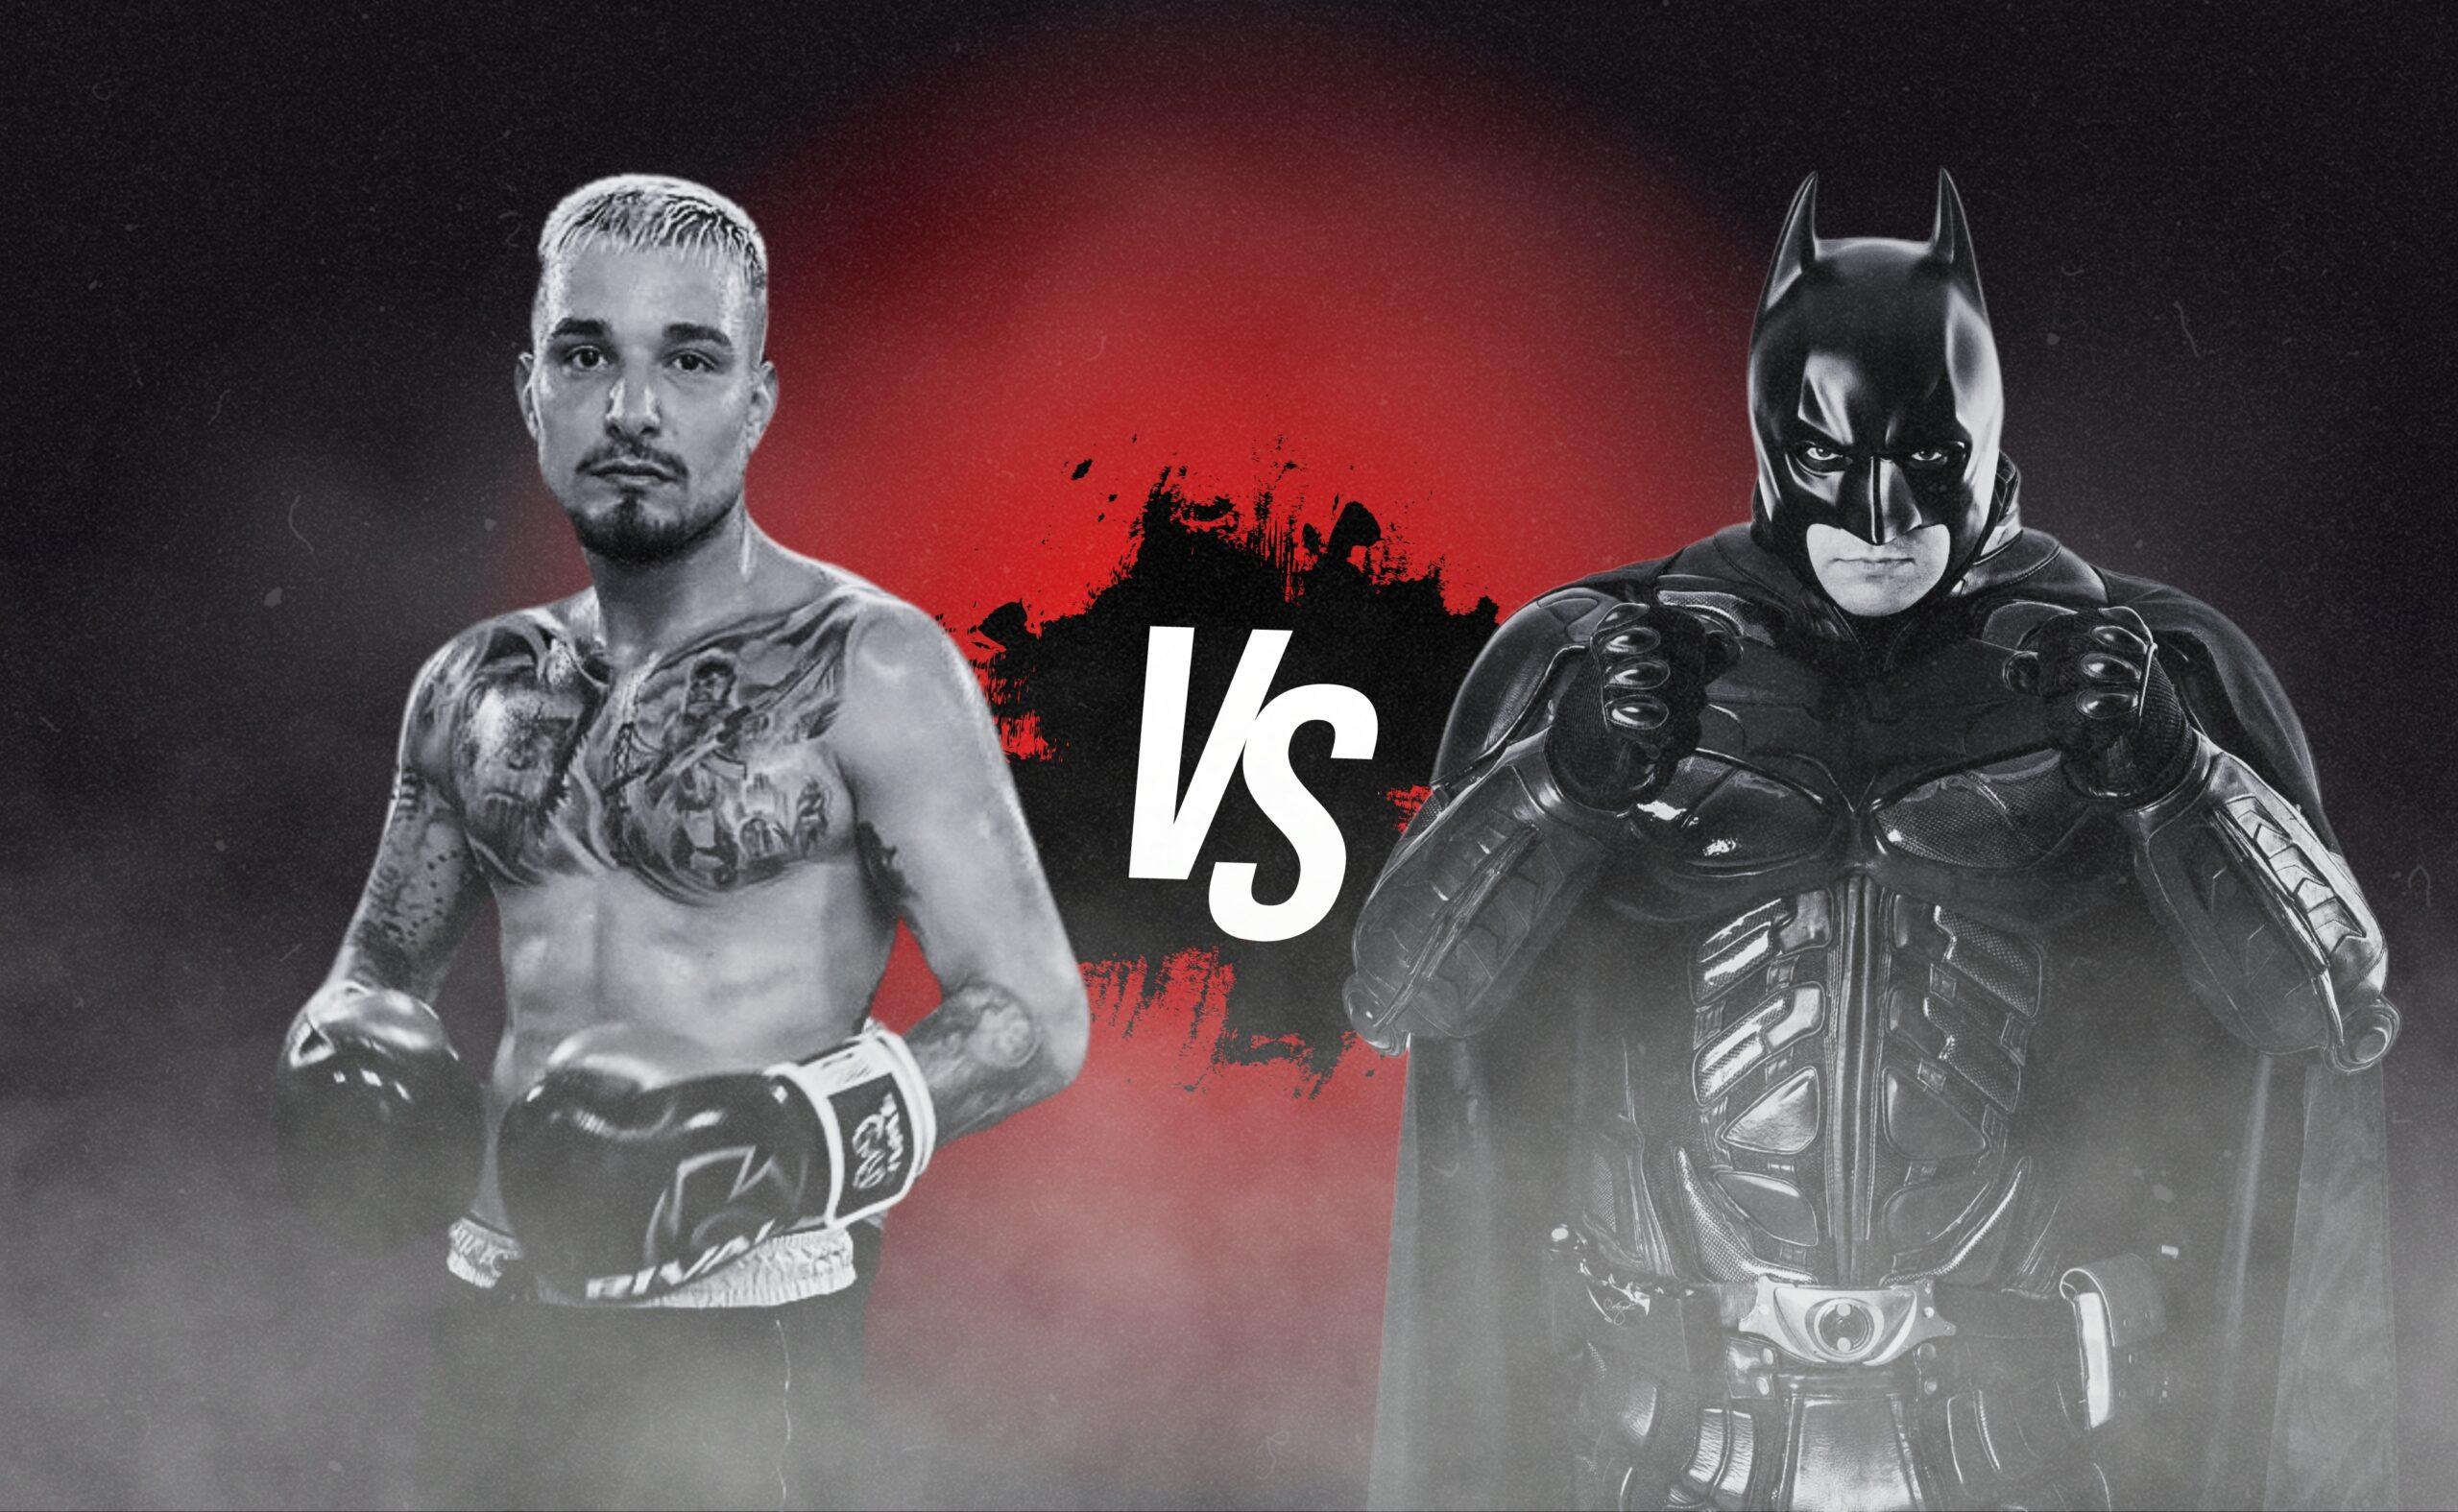 Batman do Brasil desafia MC Gui para luta no Fight Music Show após polêmica com criança com câncer